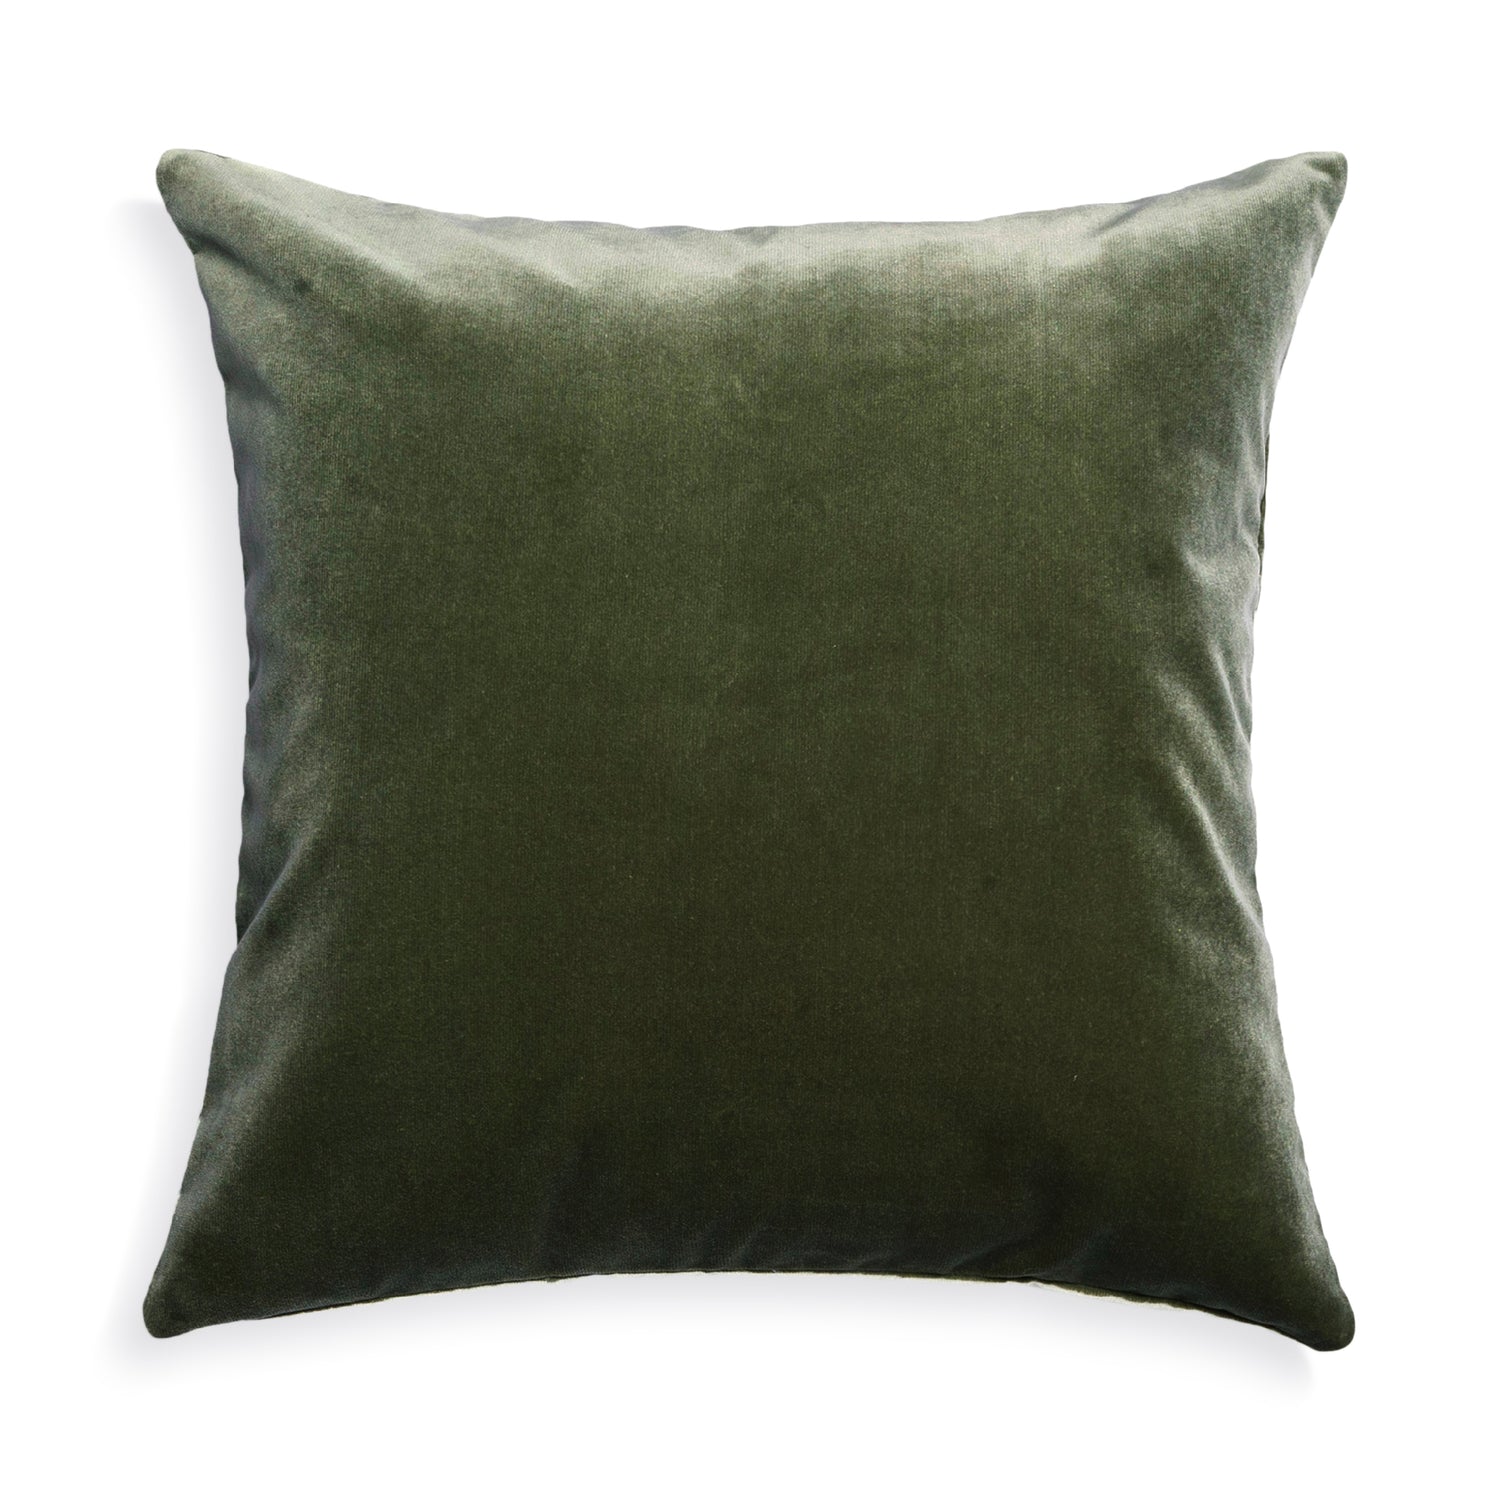 Pack of 2 Decorative Lumbar Throw Pillow Covers 18x18 - Top Notch